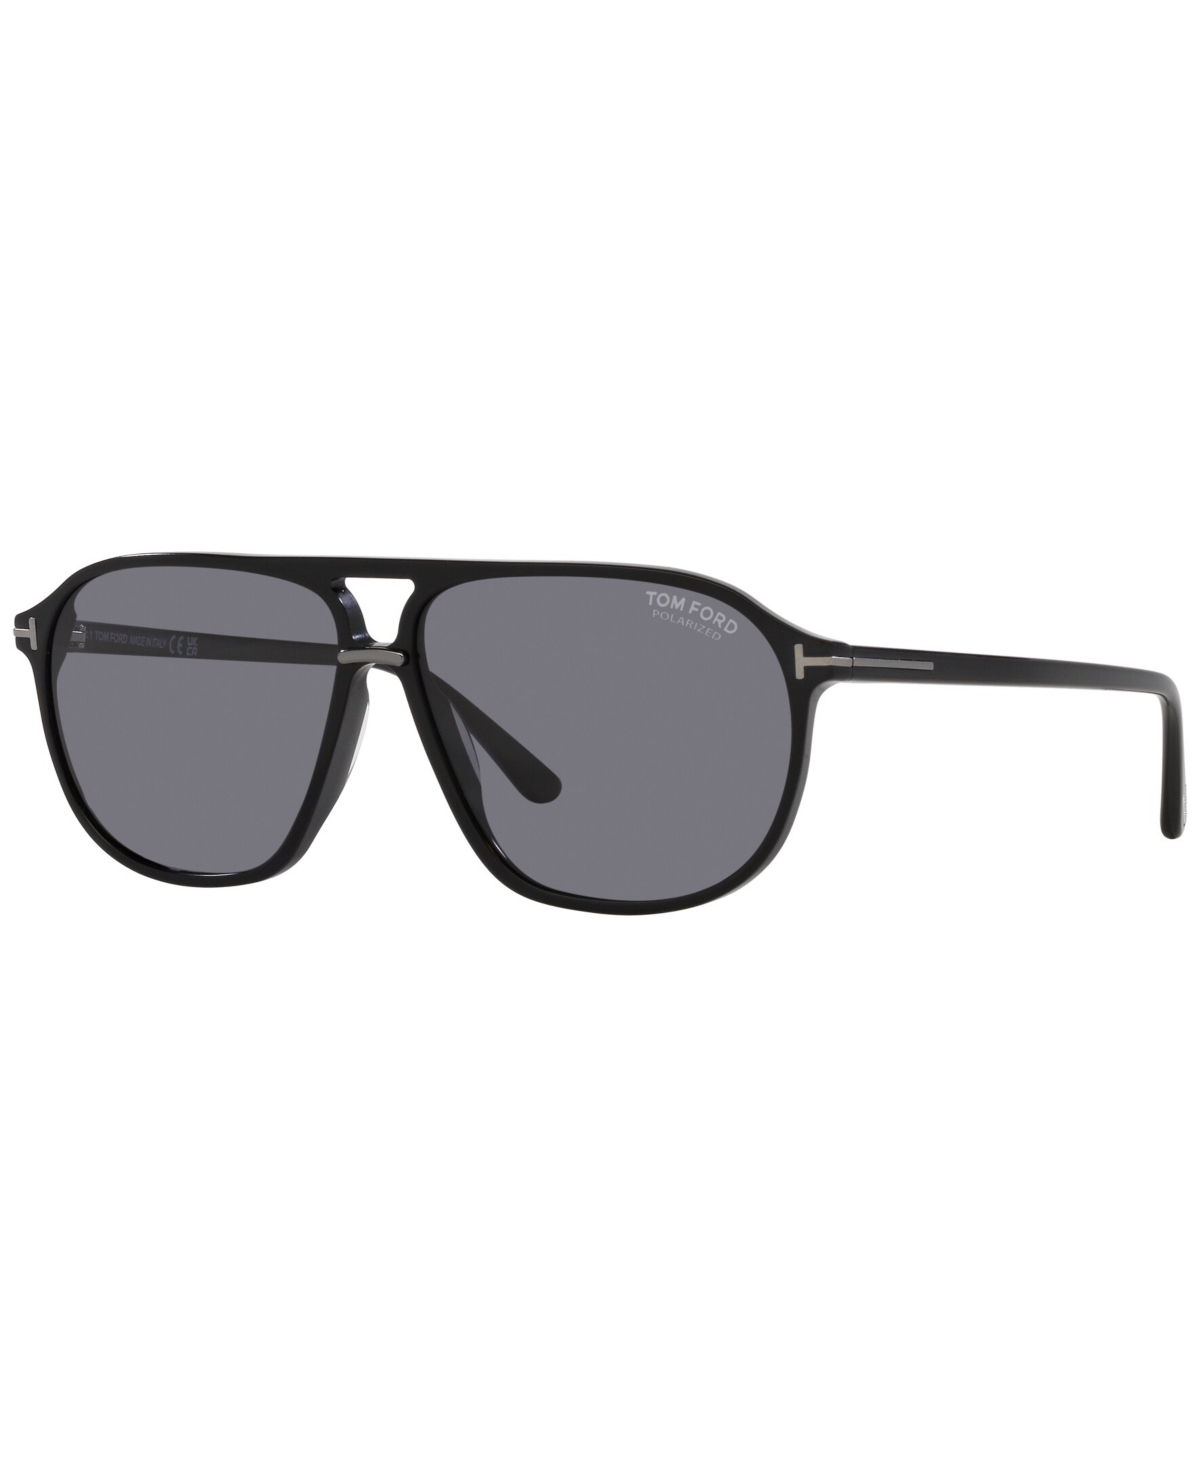 Tom Ford Men's Polarized Sunglasses, Bruce In Shiny Black